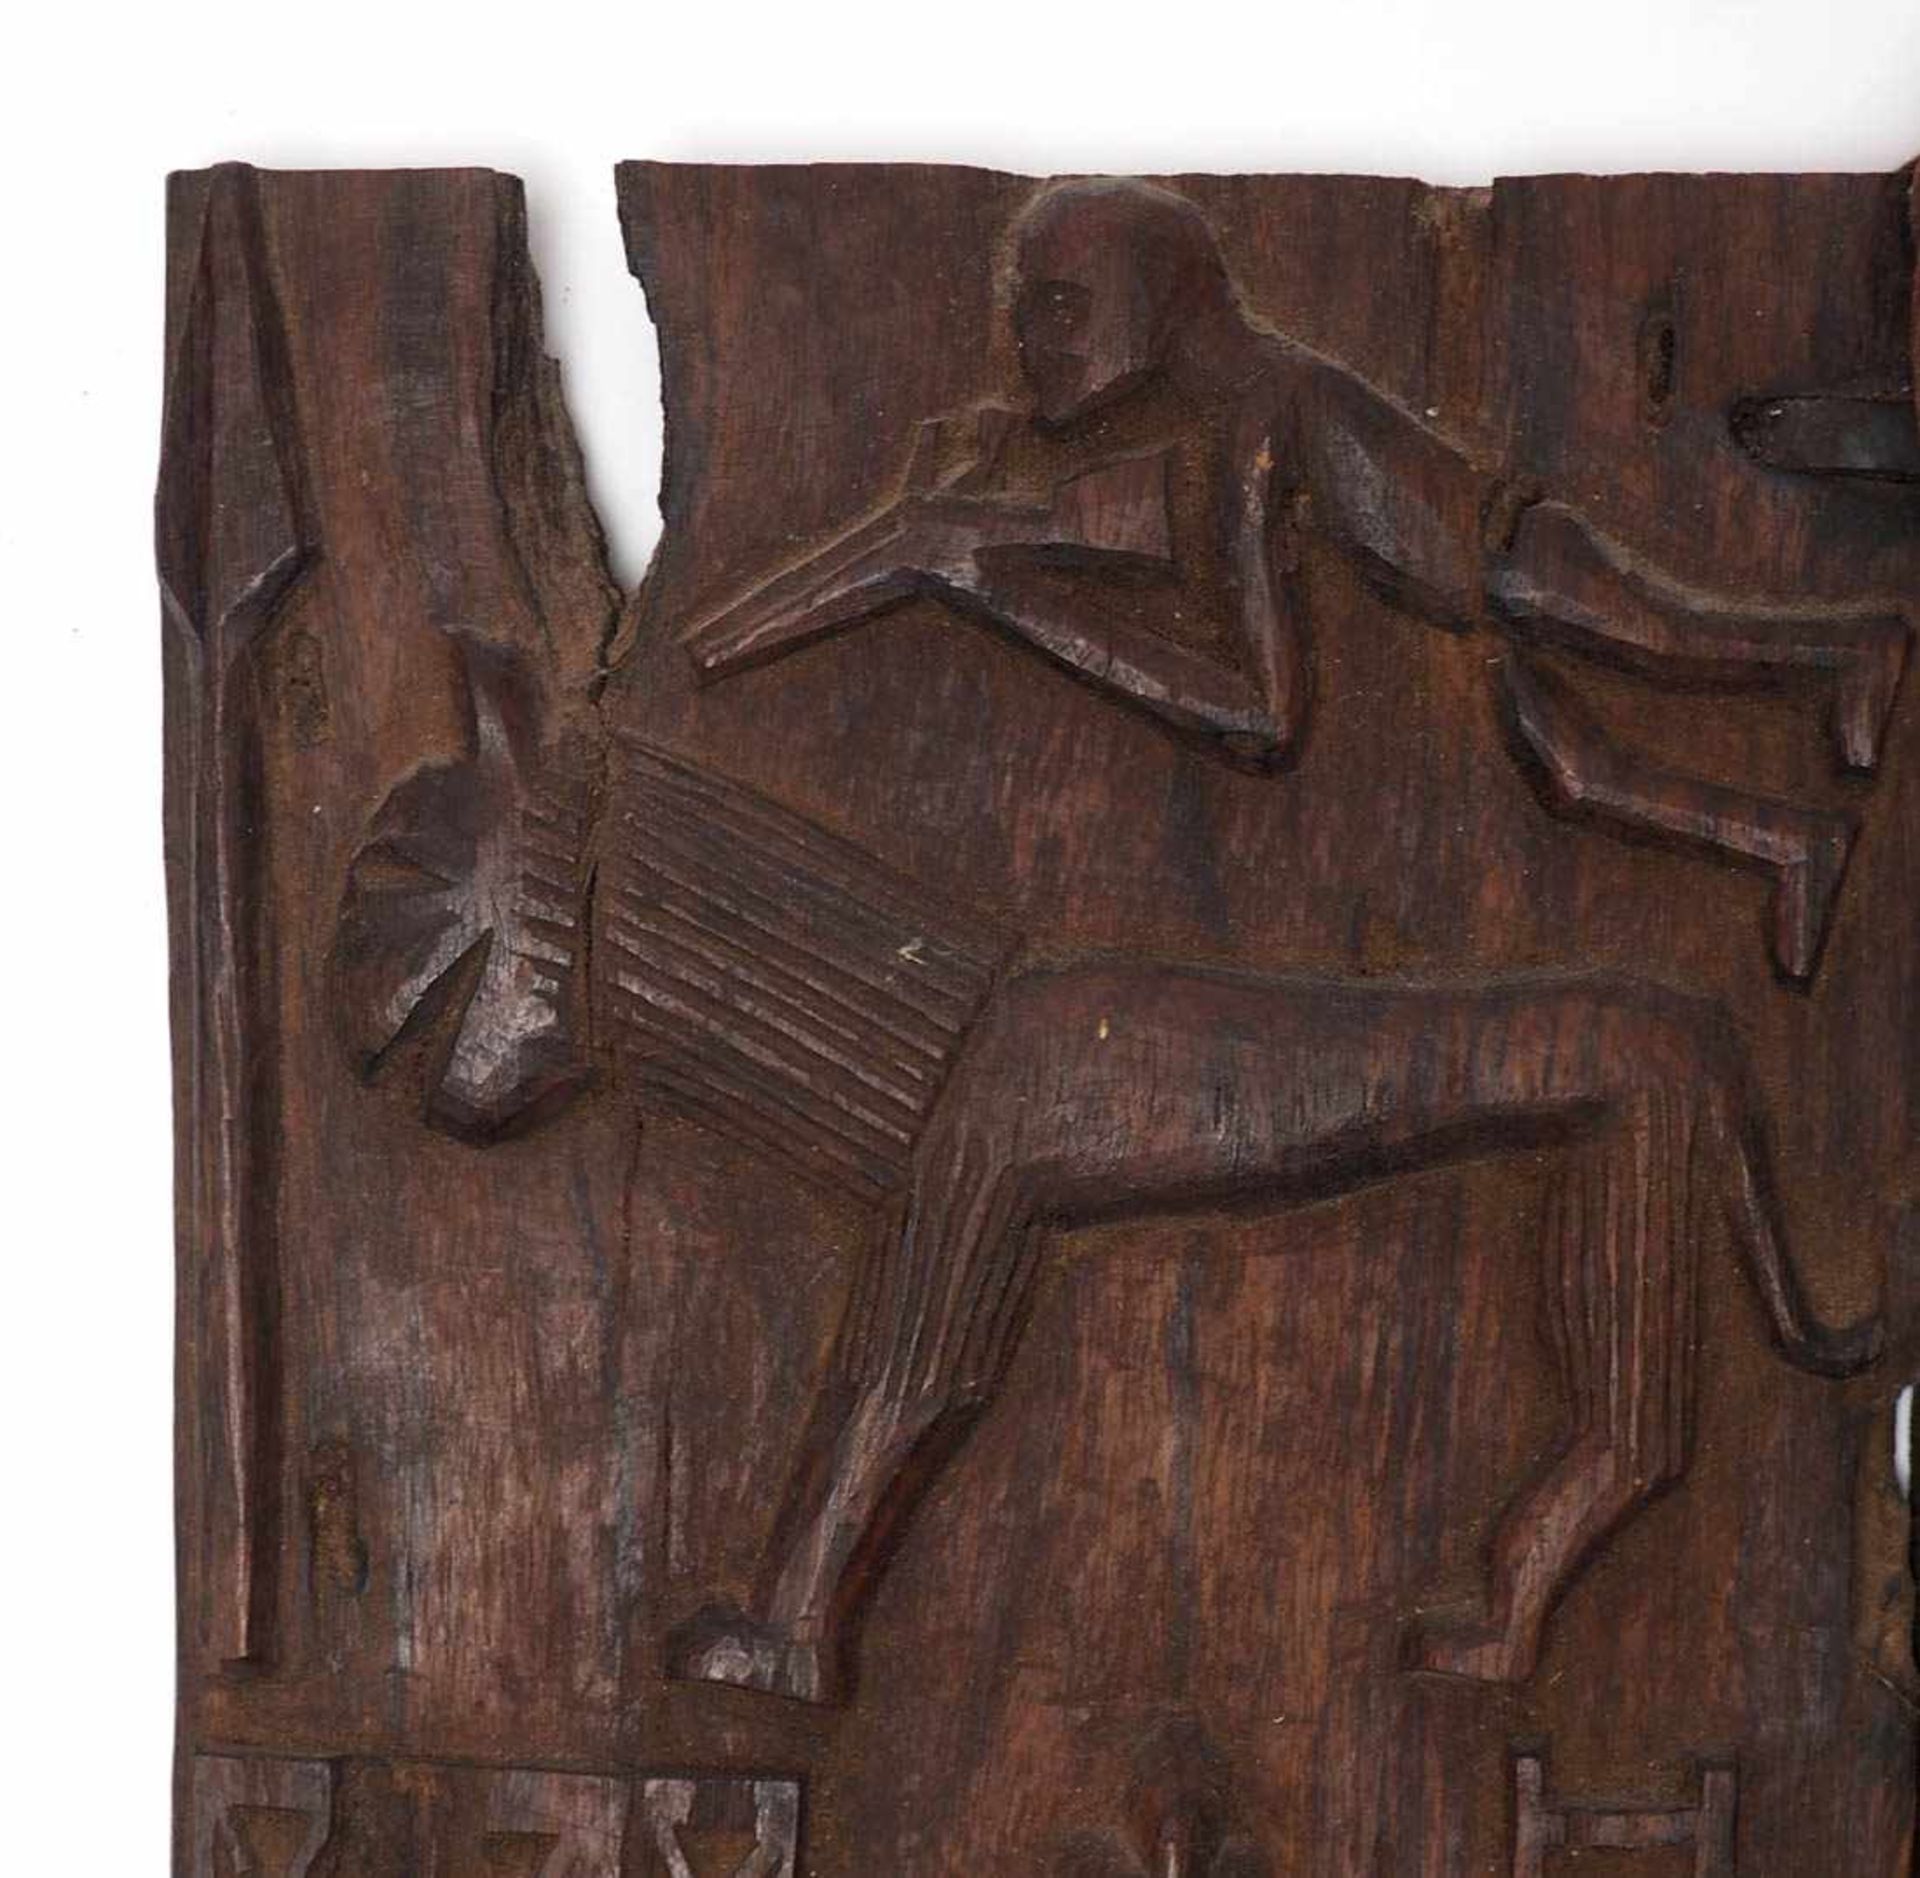 Kornspeichertür, Dogon, Mali Fein geschnitzt, mit menschlichen Figuren, Löwen und Jägern. 50x36cm. - Bild 2 aus 13